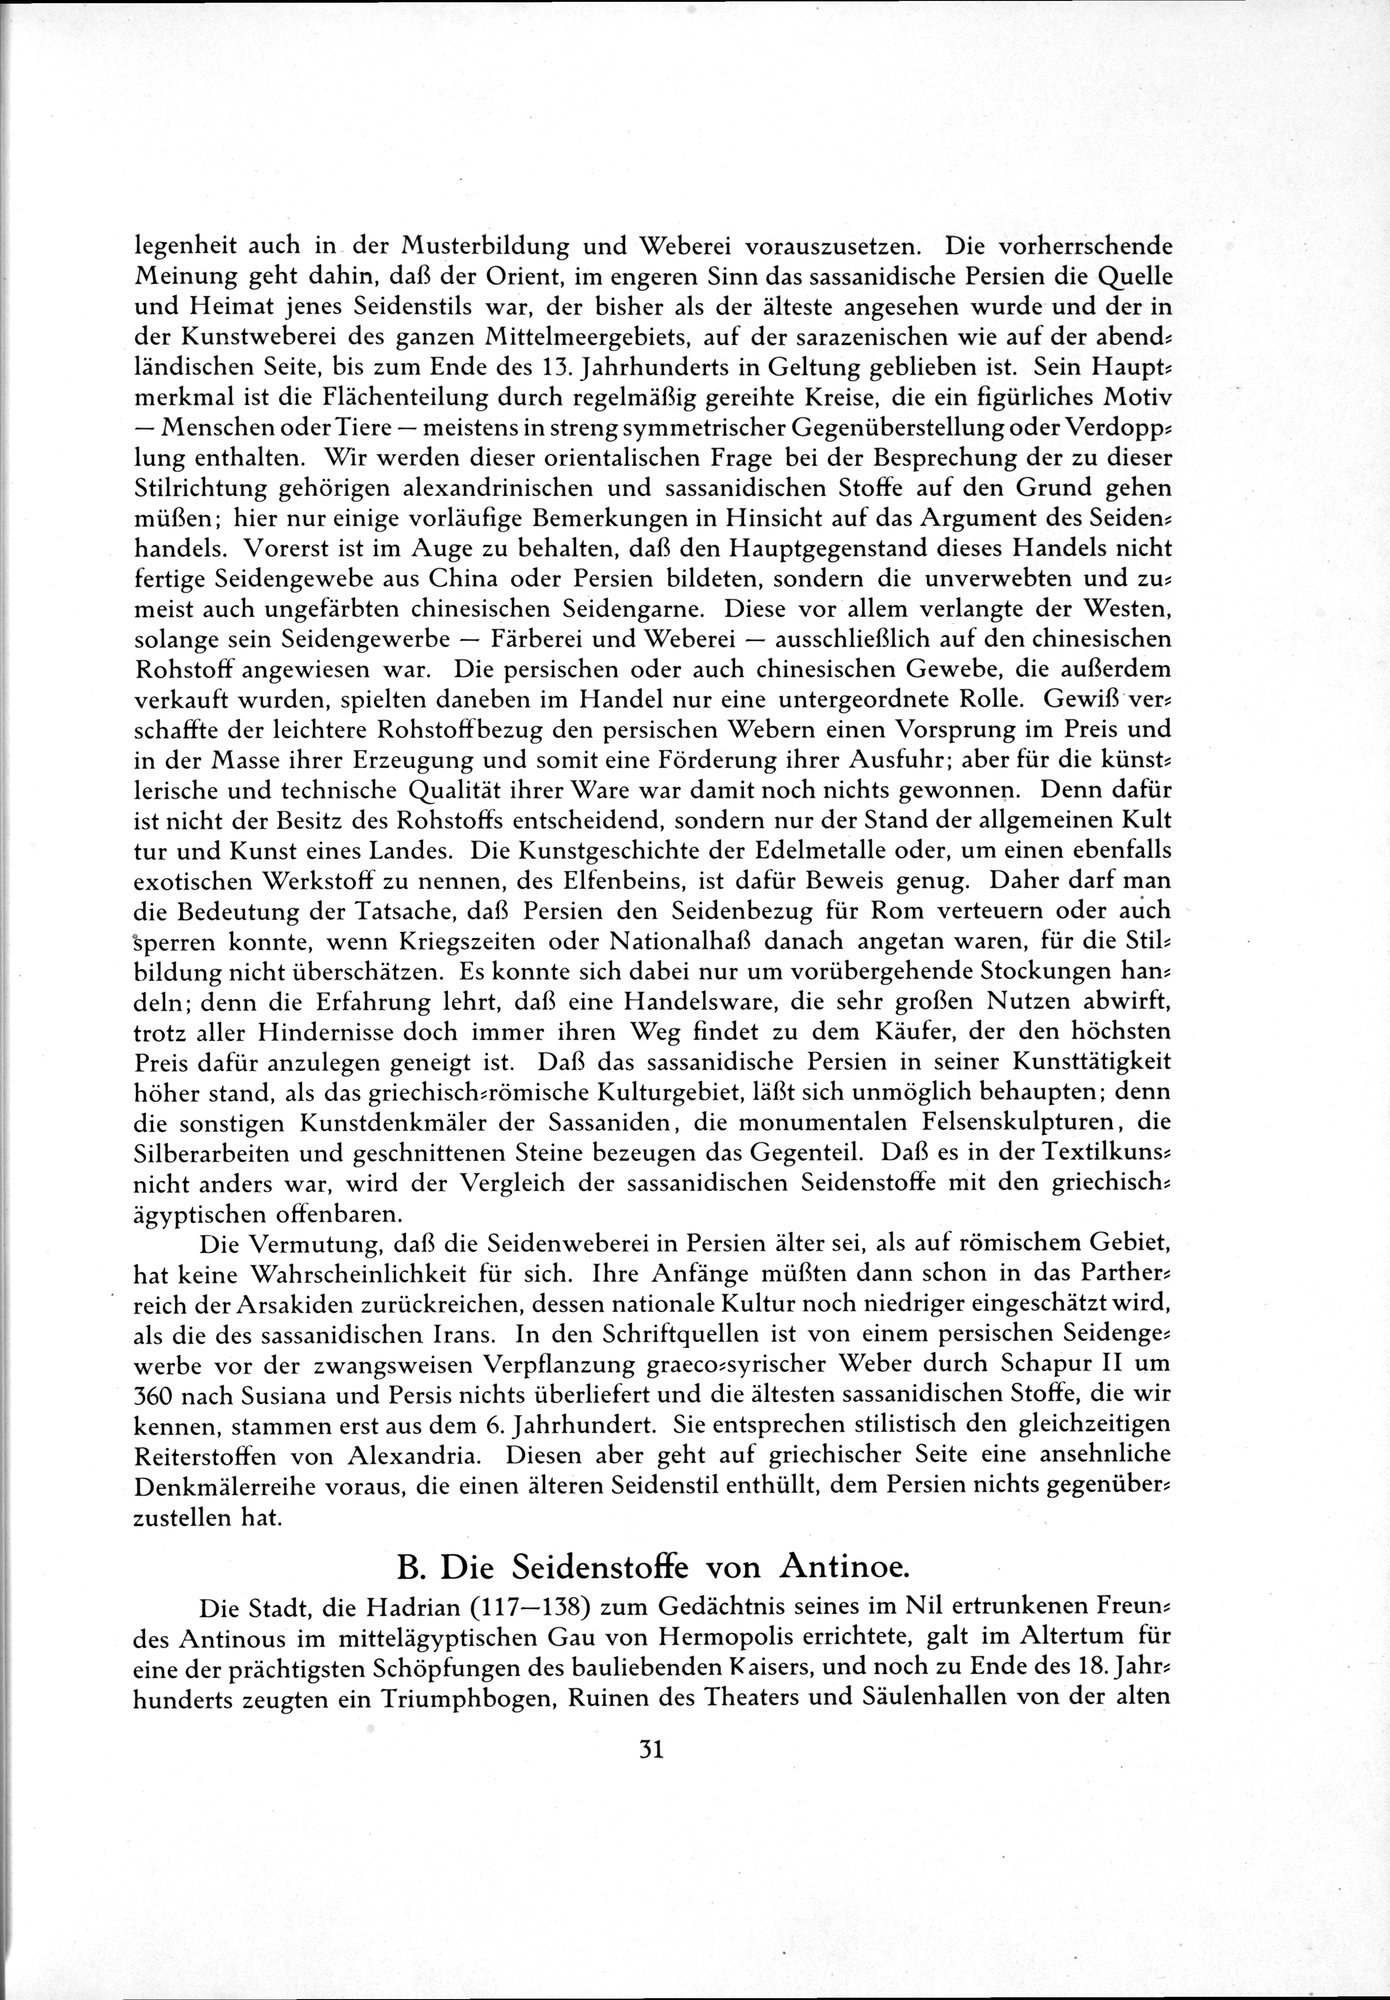 Kunstgeschichte der Seidenweberei : vol.1 / Page 91 (Grayscale High Resolution Image)